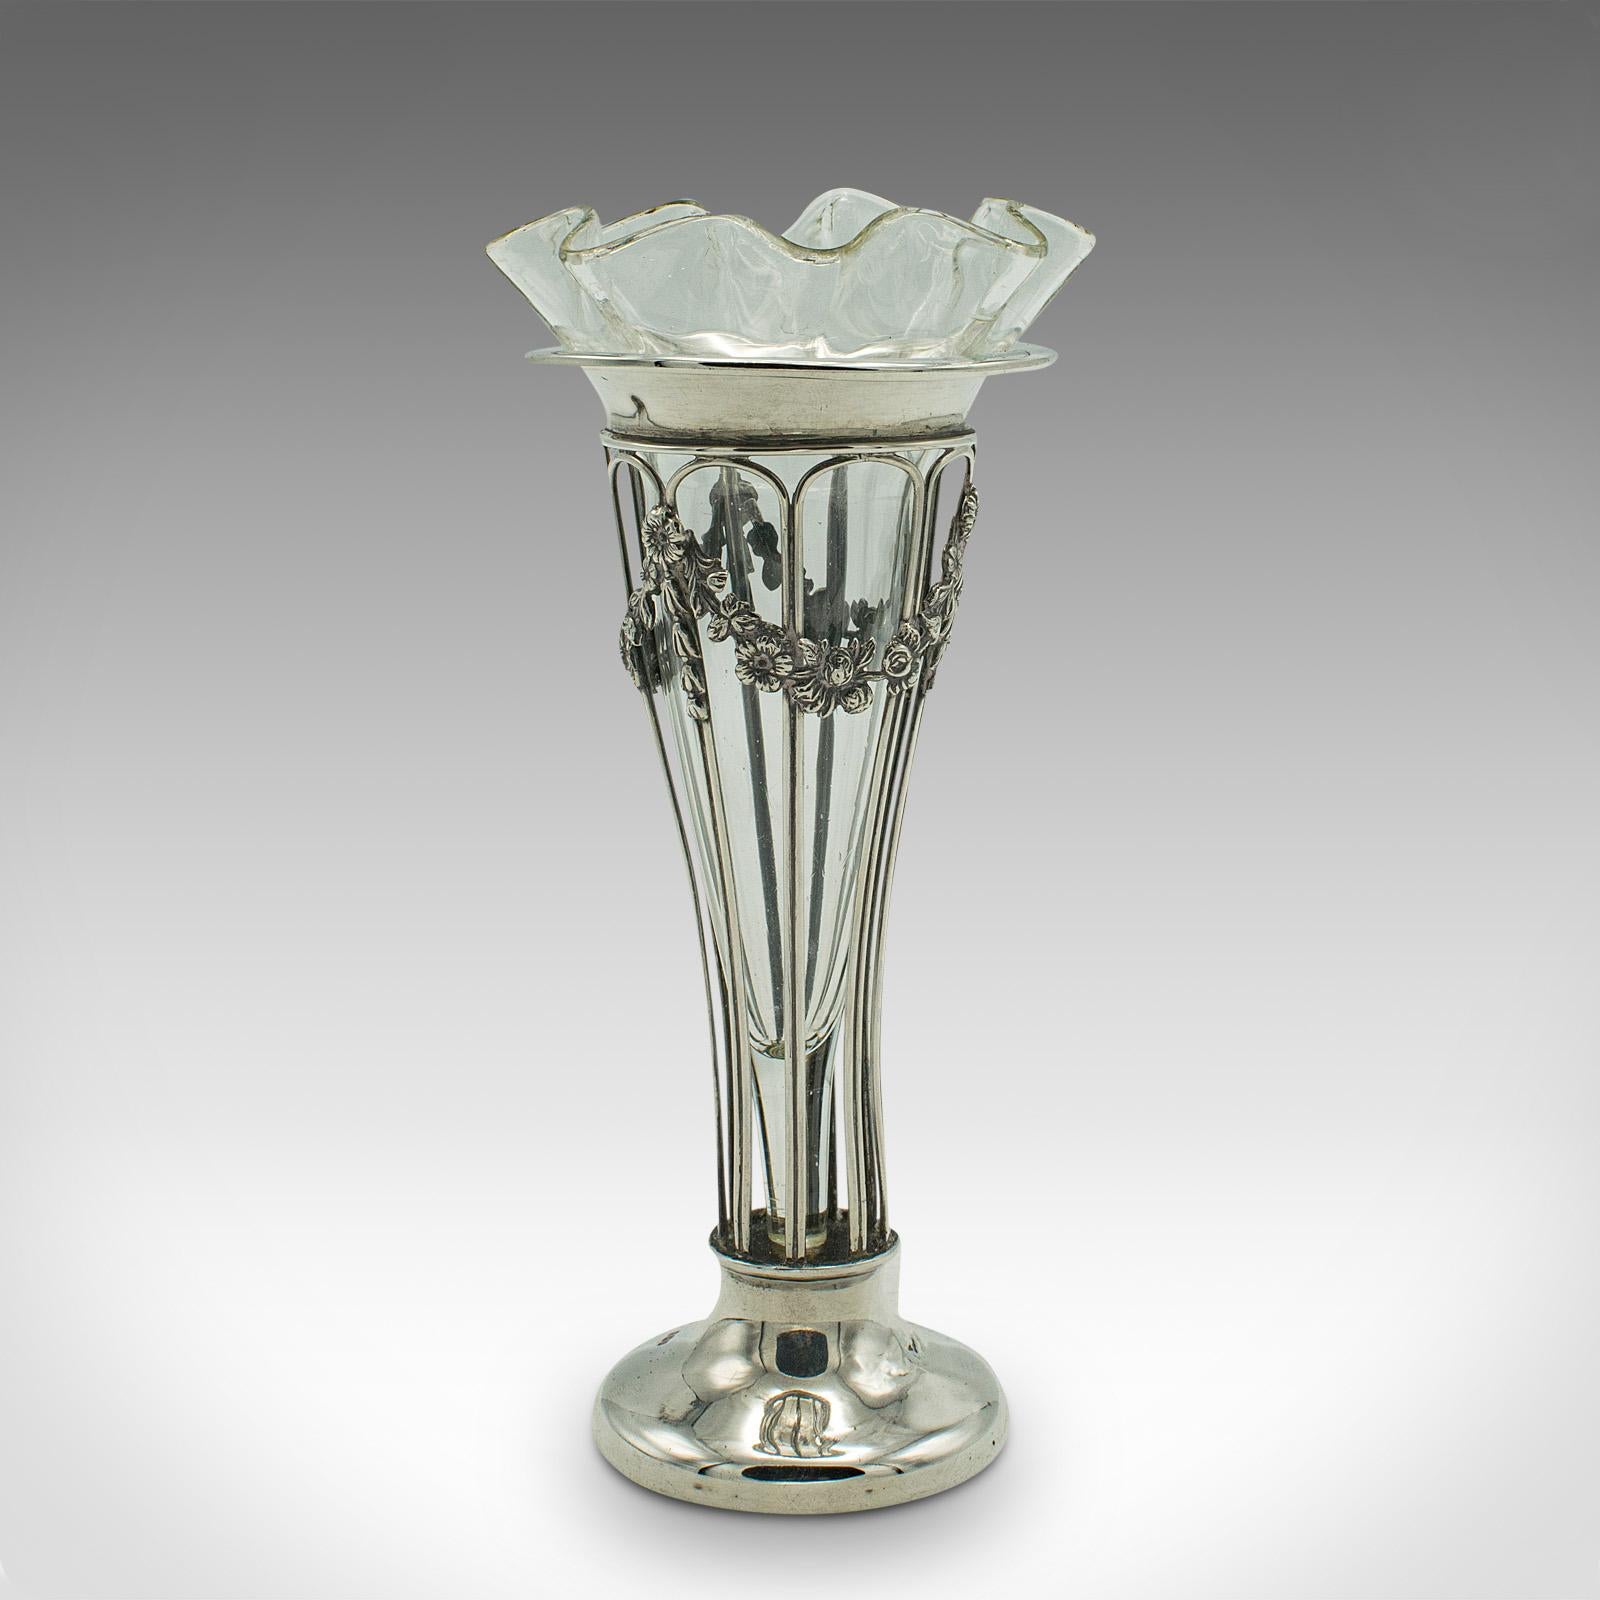 British Small Antique Stem Vase, English, Silver, Glass, Decor, Art Nouveau, Edwardian For Sale